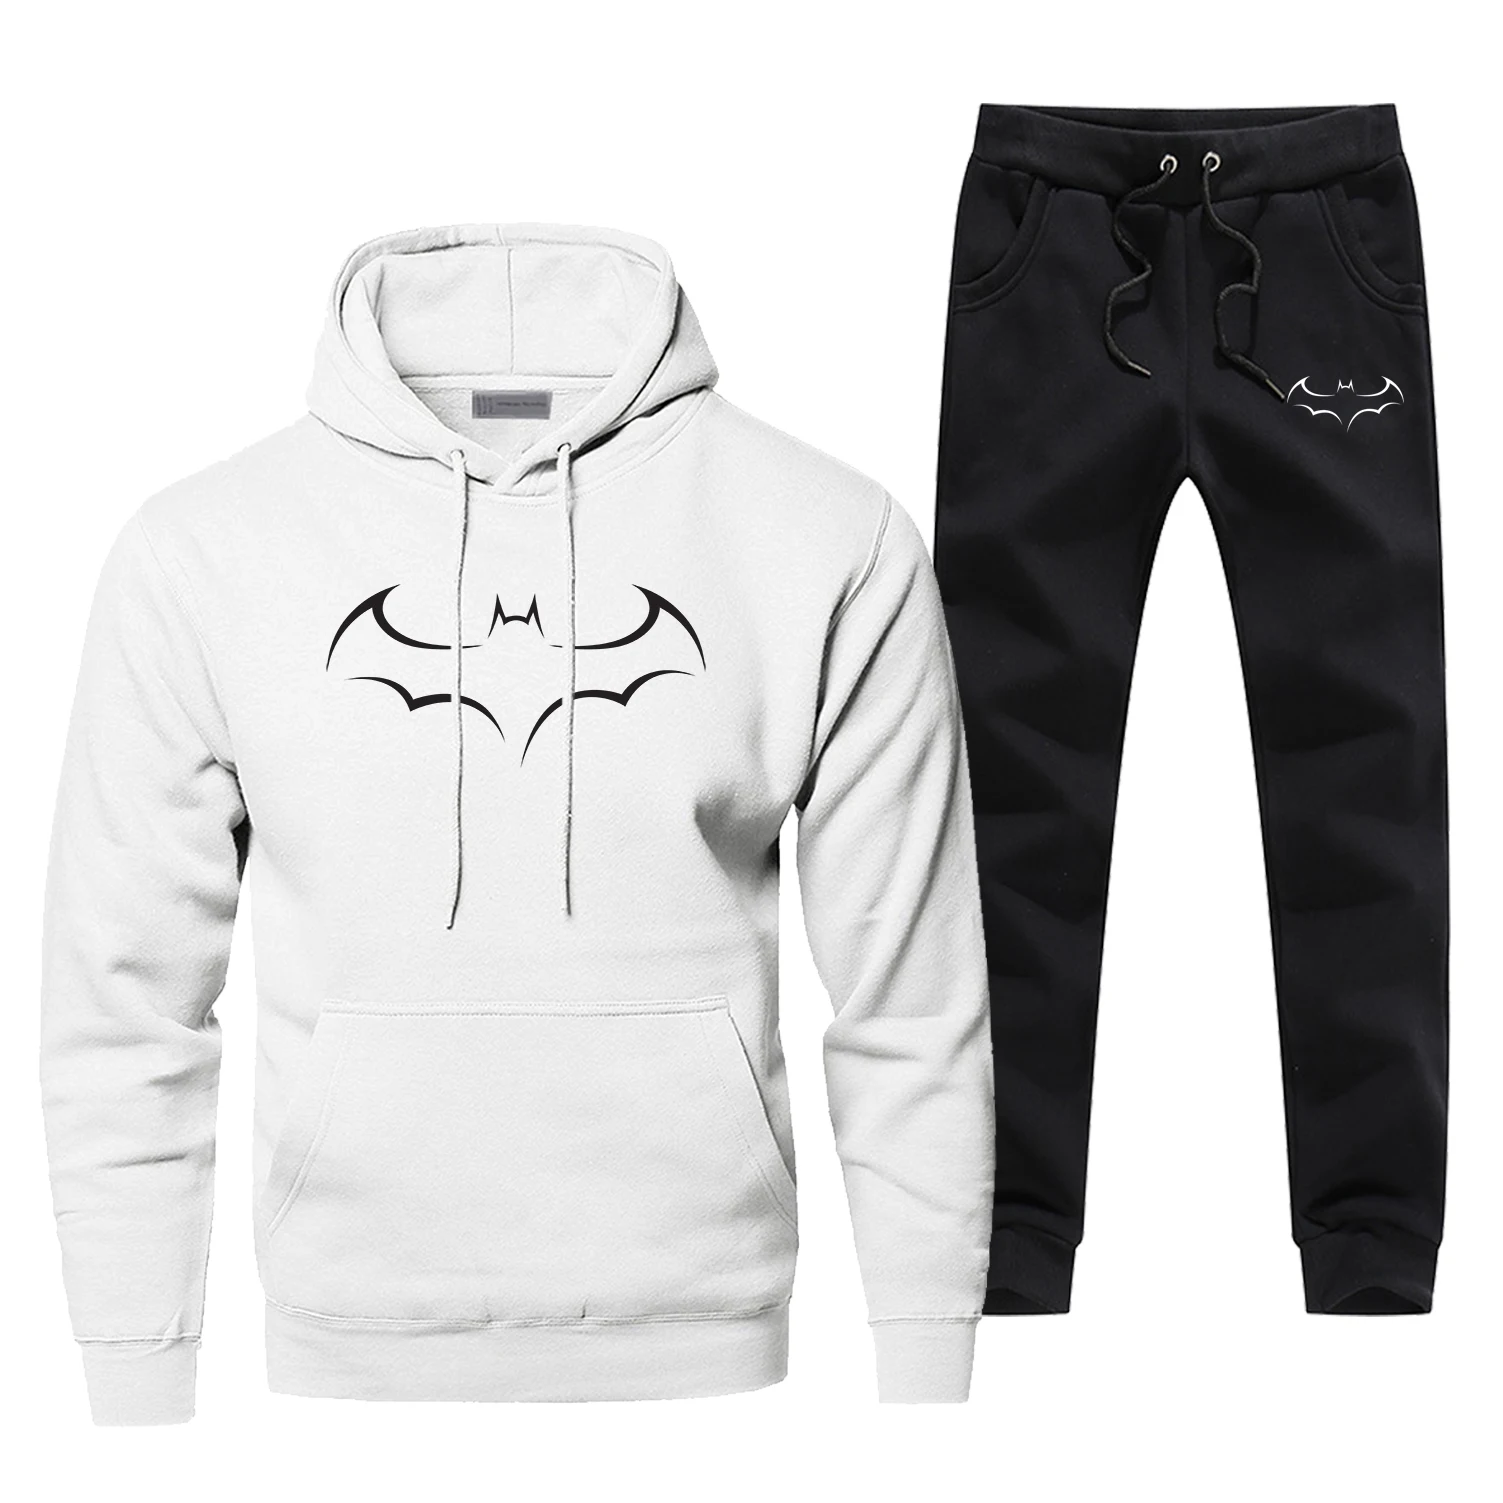 Модная повседневная мужская спортивная одежда с принтом Бэтмена, супергероя, Ropa Hombre, мужская одежда с летучей мышью, мужская одежда, бодиутеплитель, полный мужской спортивный костюм - Цвет: White 1